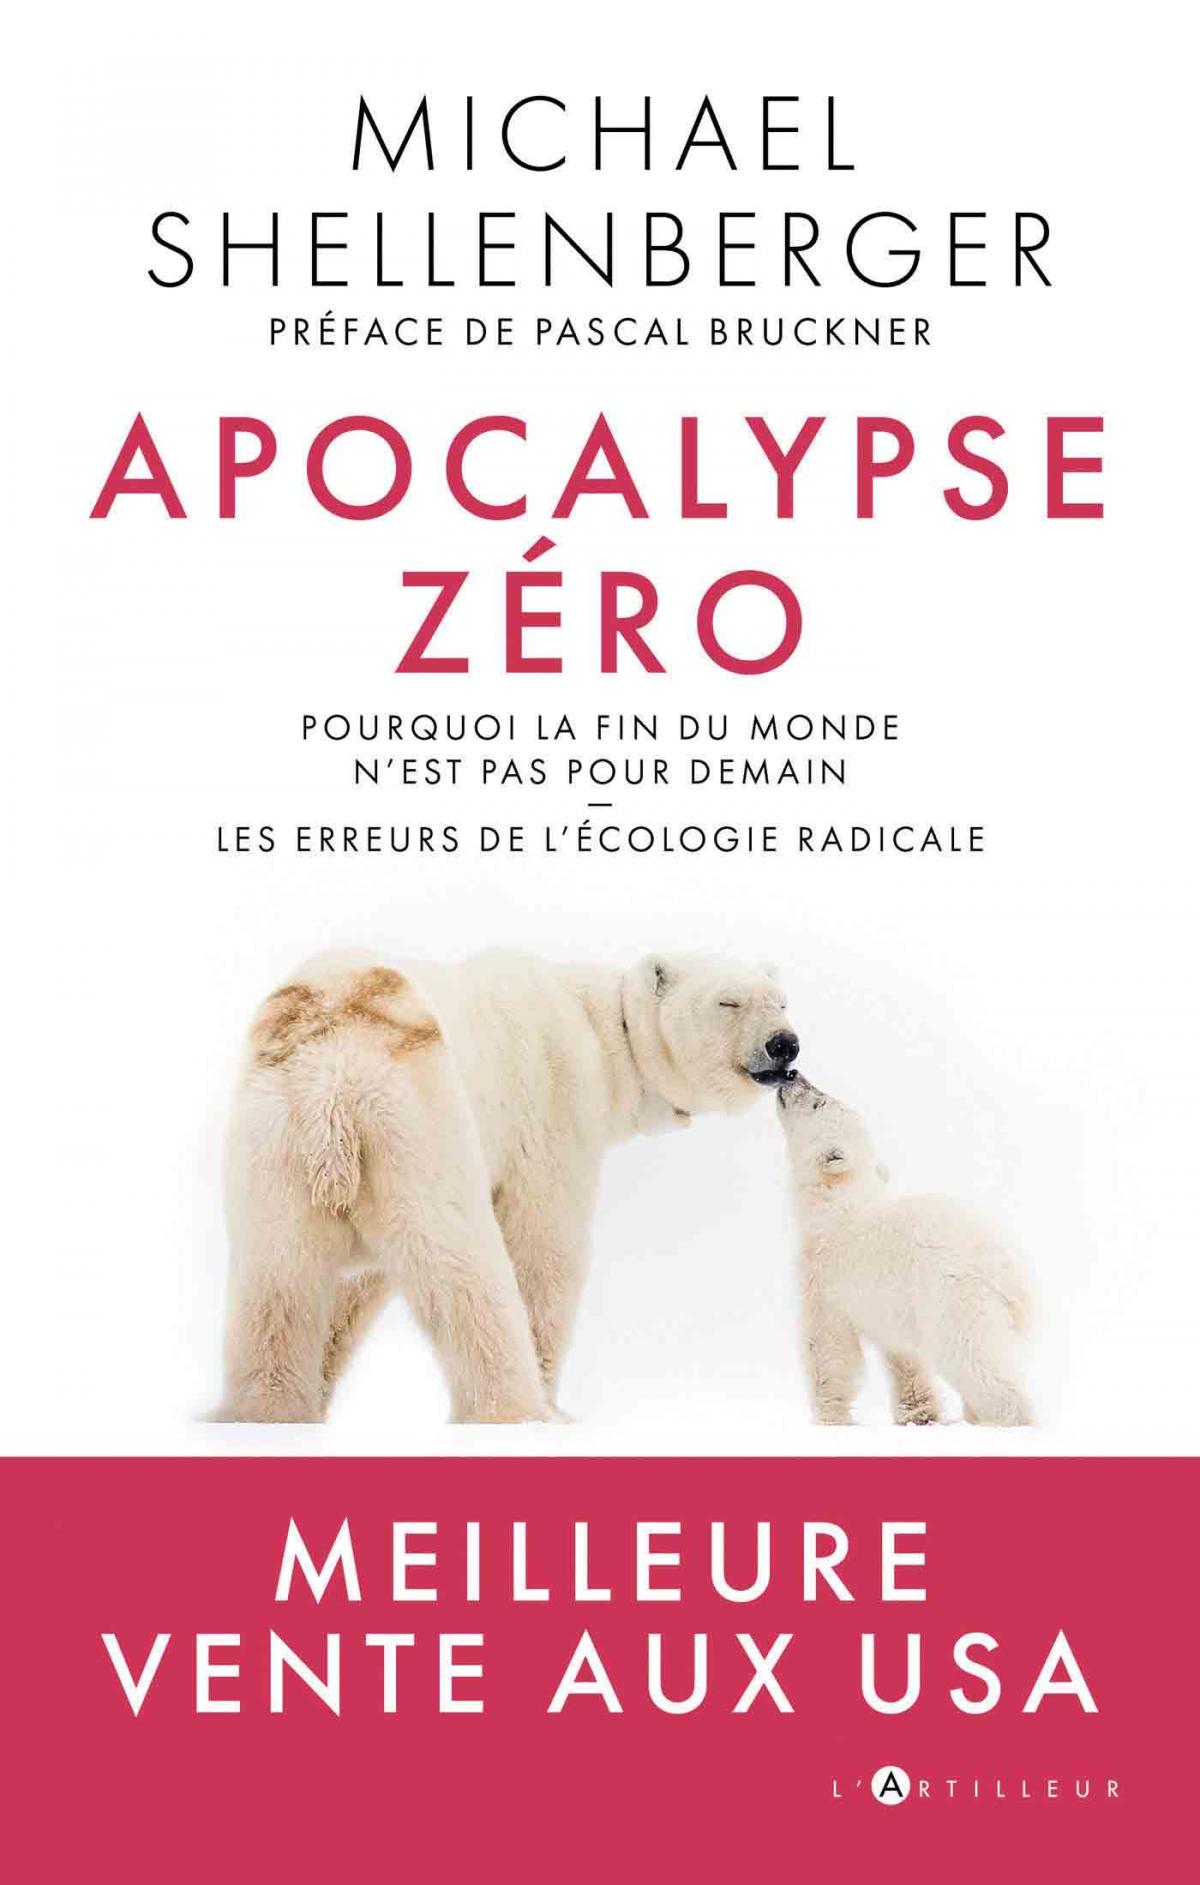 'Apocalypse Zéro' de Michel Shellenberger